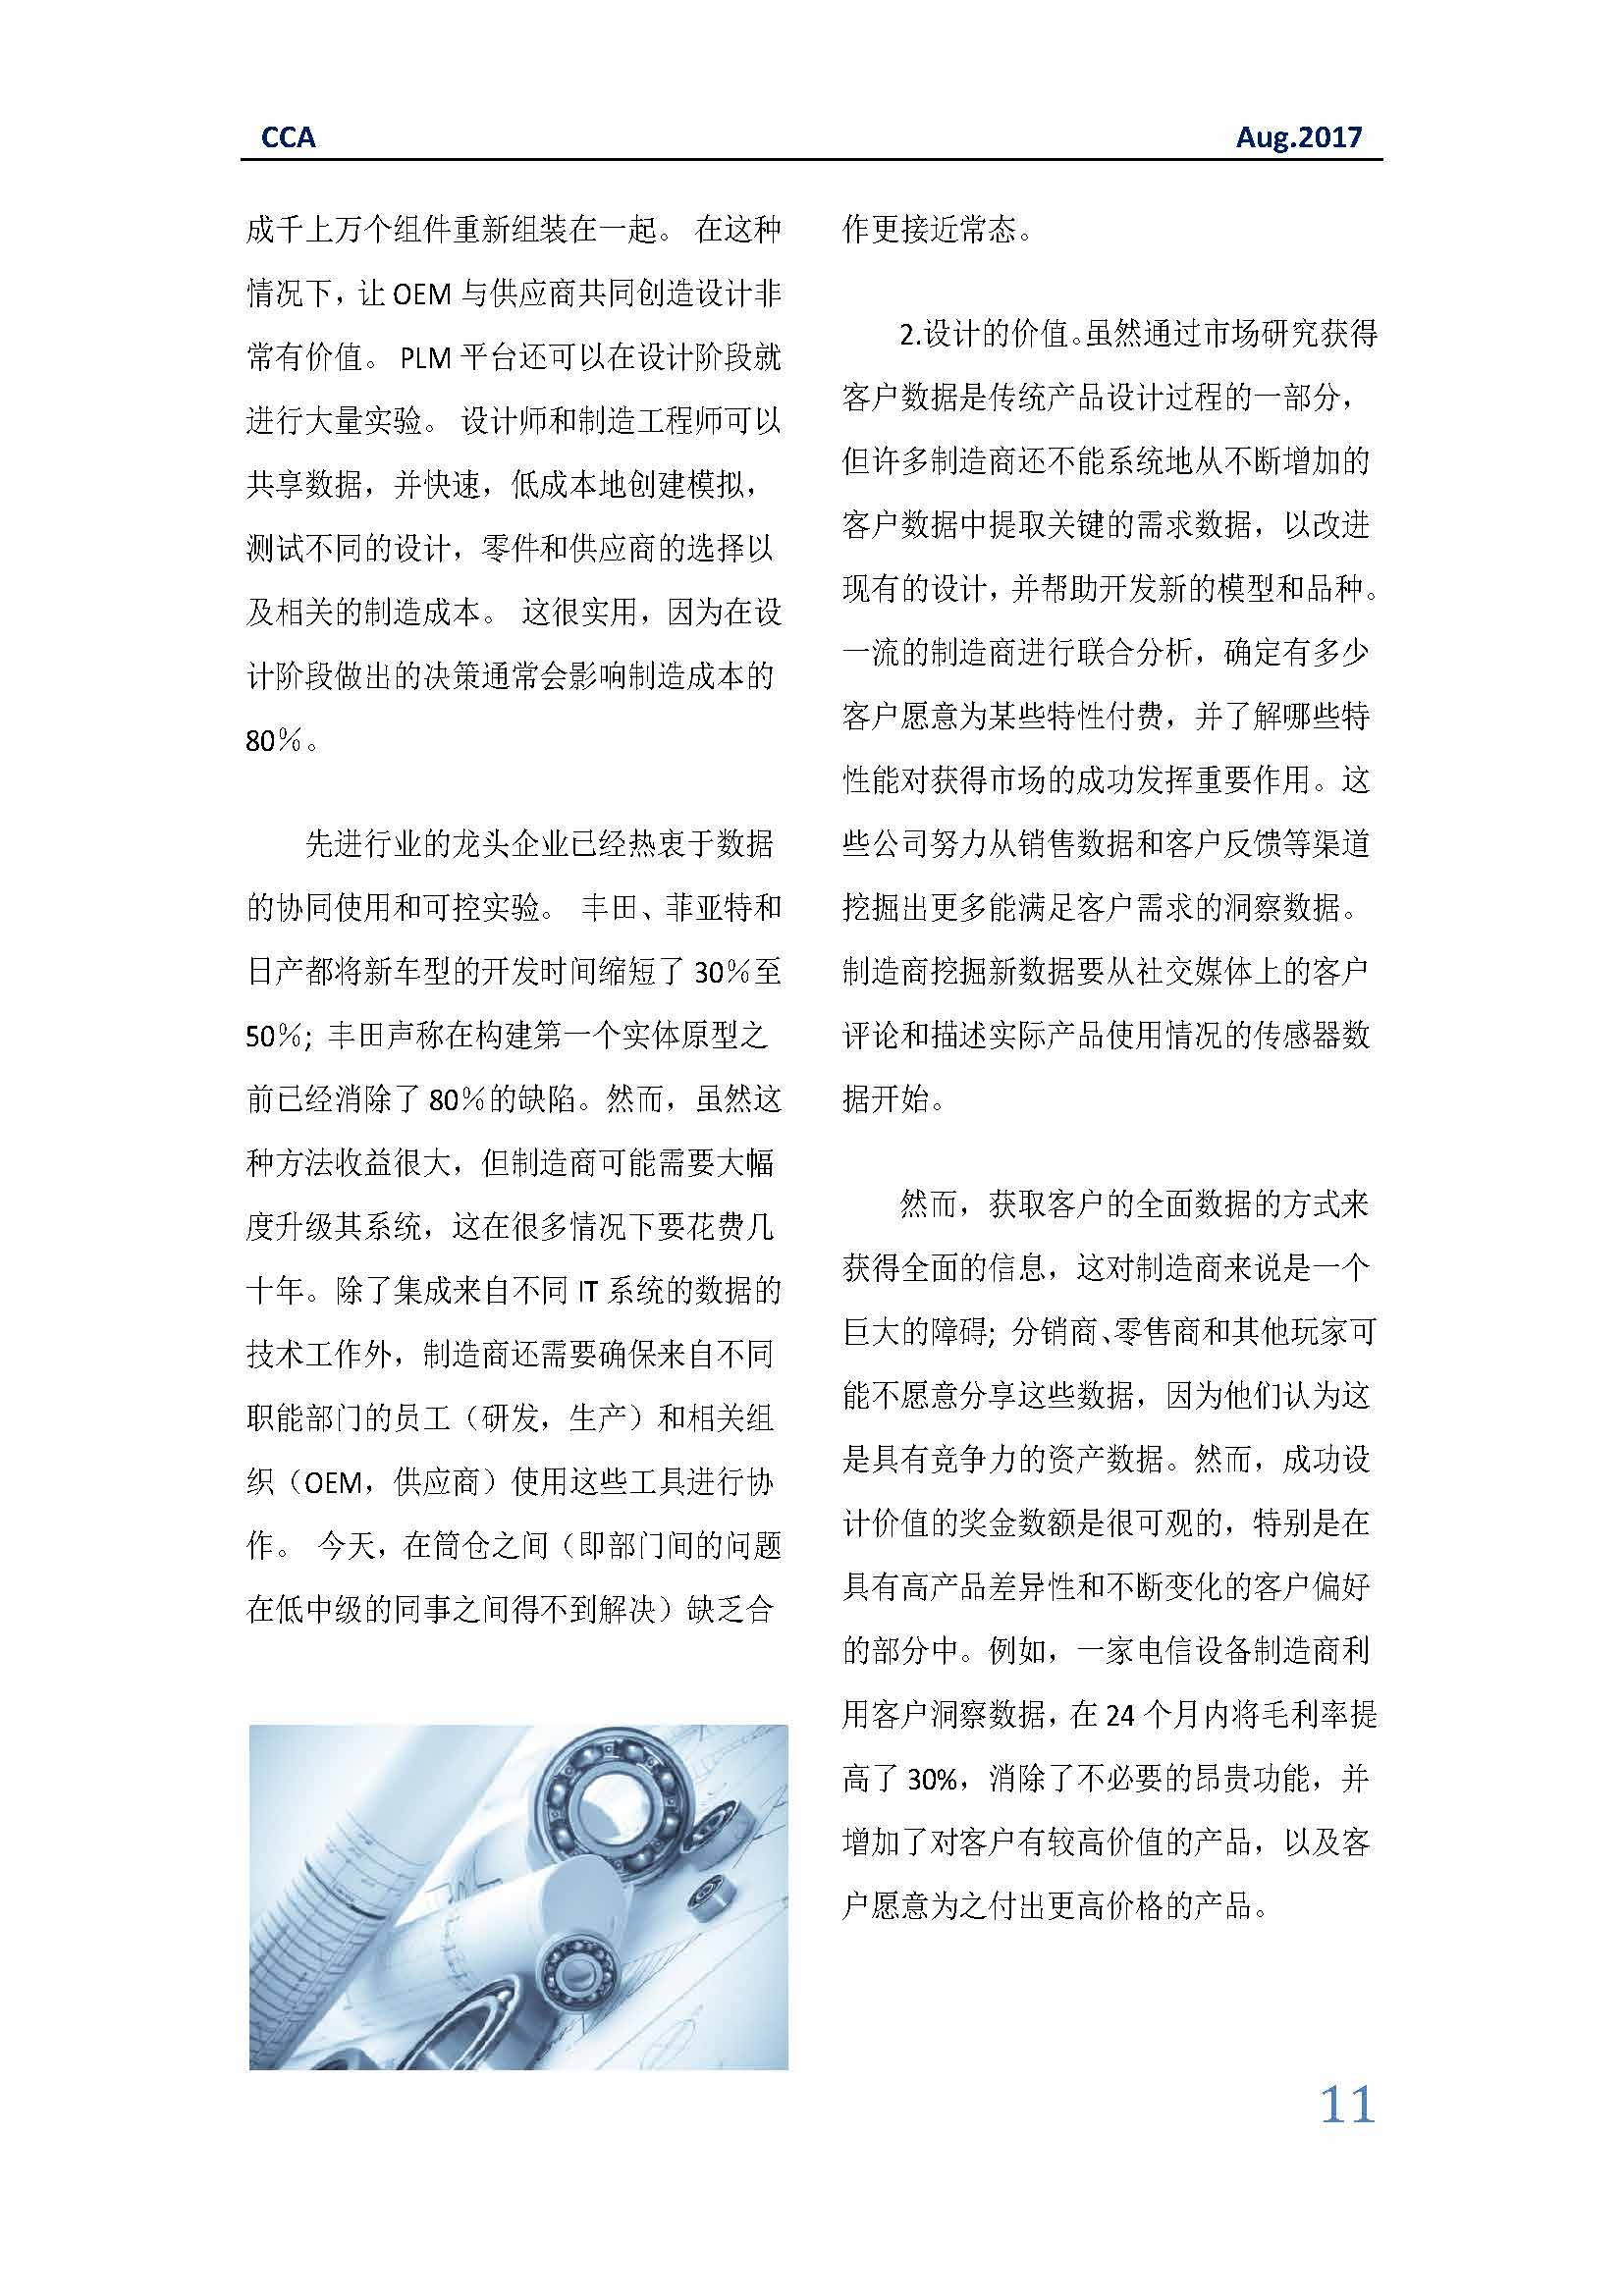 中国科技咨询协会国际快讯（第二十九期）_页面_11.jpg